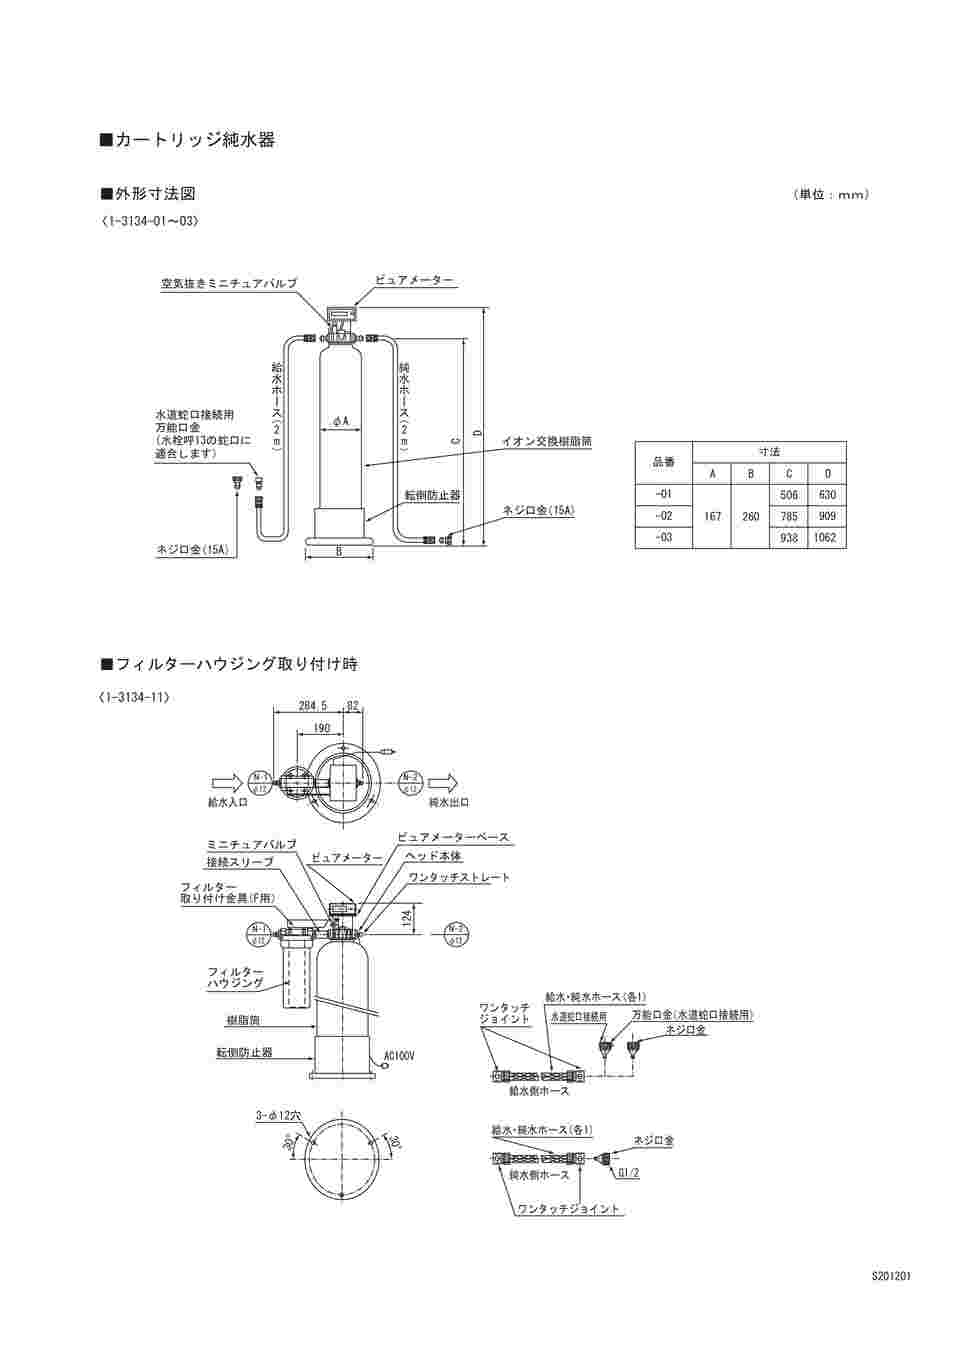 栗田工業 カートリッジ純水器 デミエース DX-15型 (1-3134-03) :1-3134